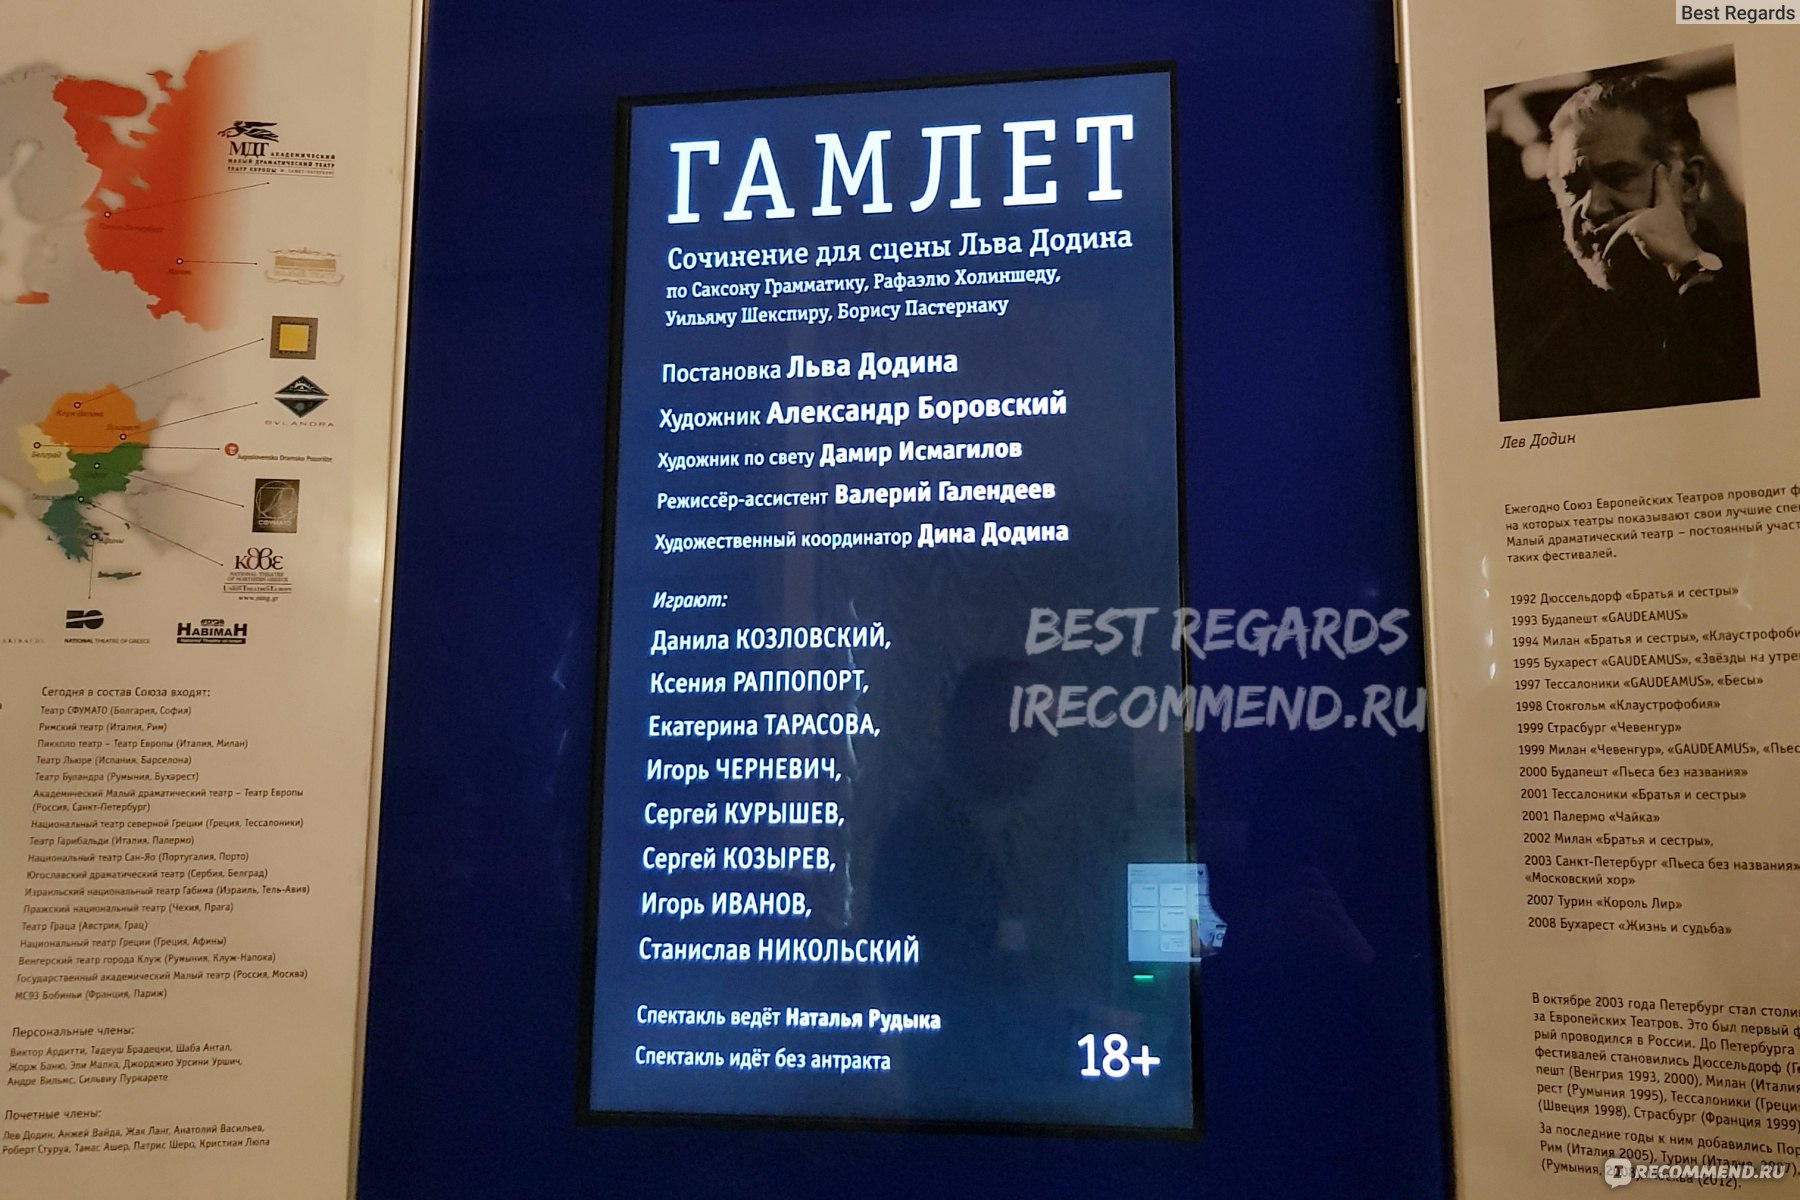 Спектакль "Гамлет" - Малый драматический театр (Театр Европы), Санкт-Петербург фото